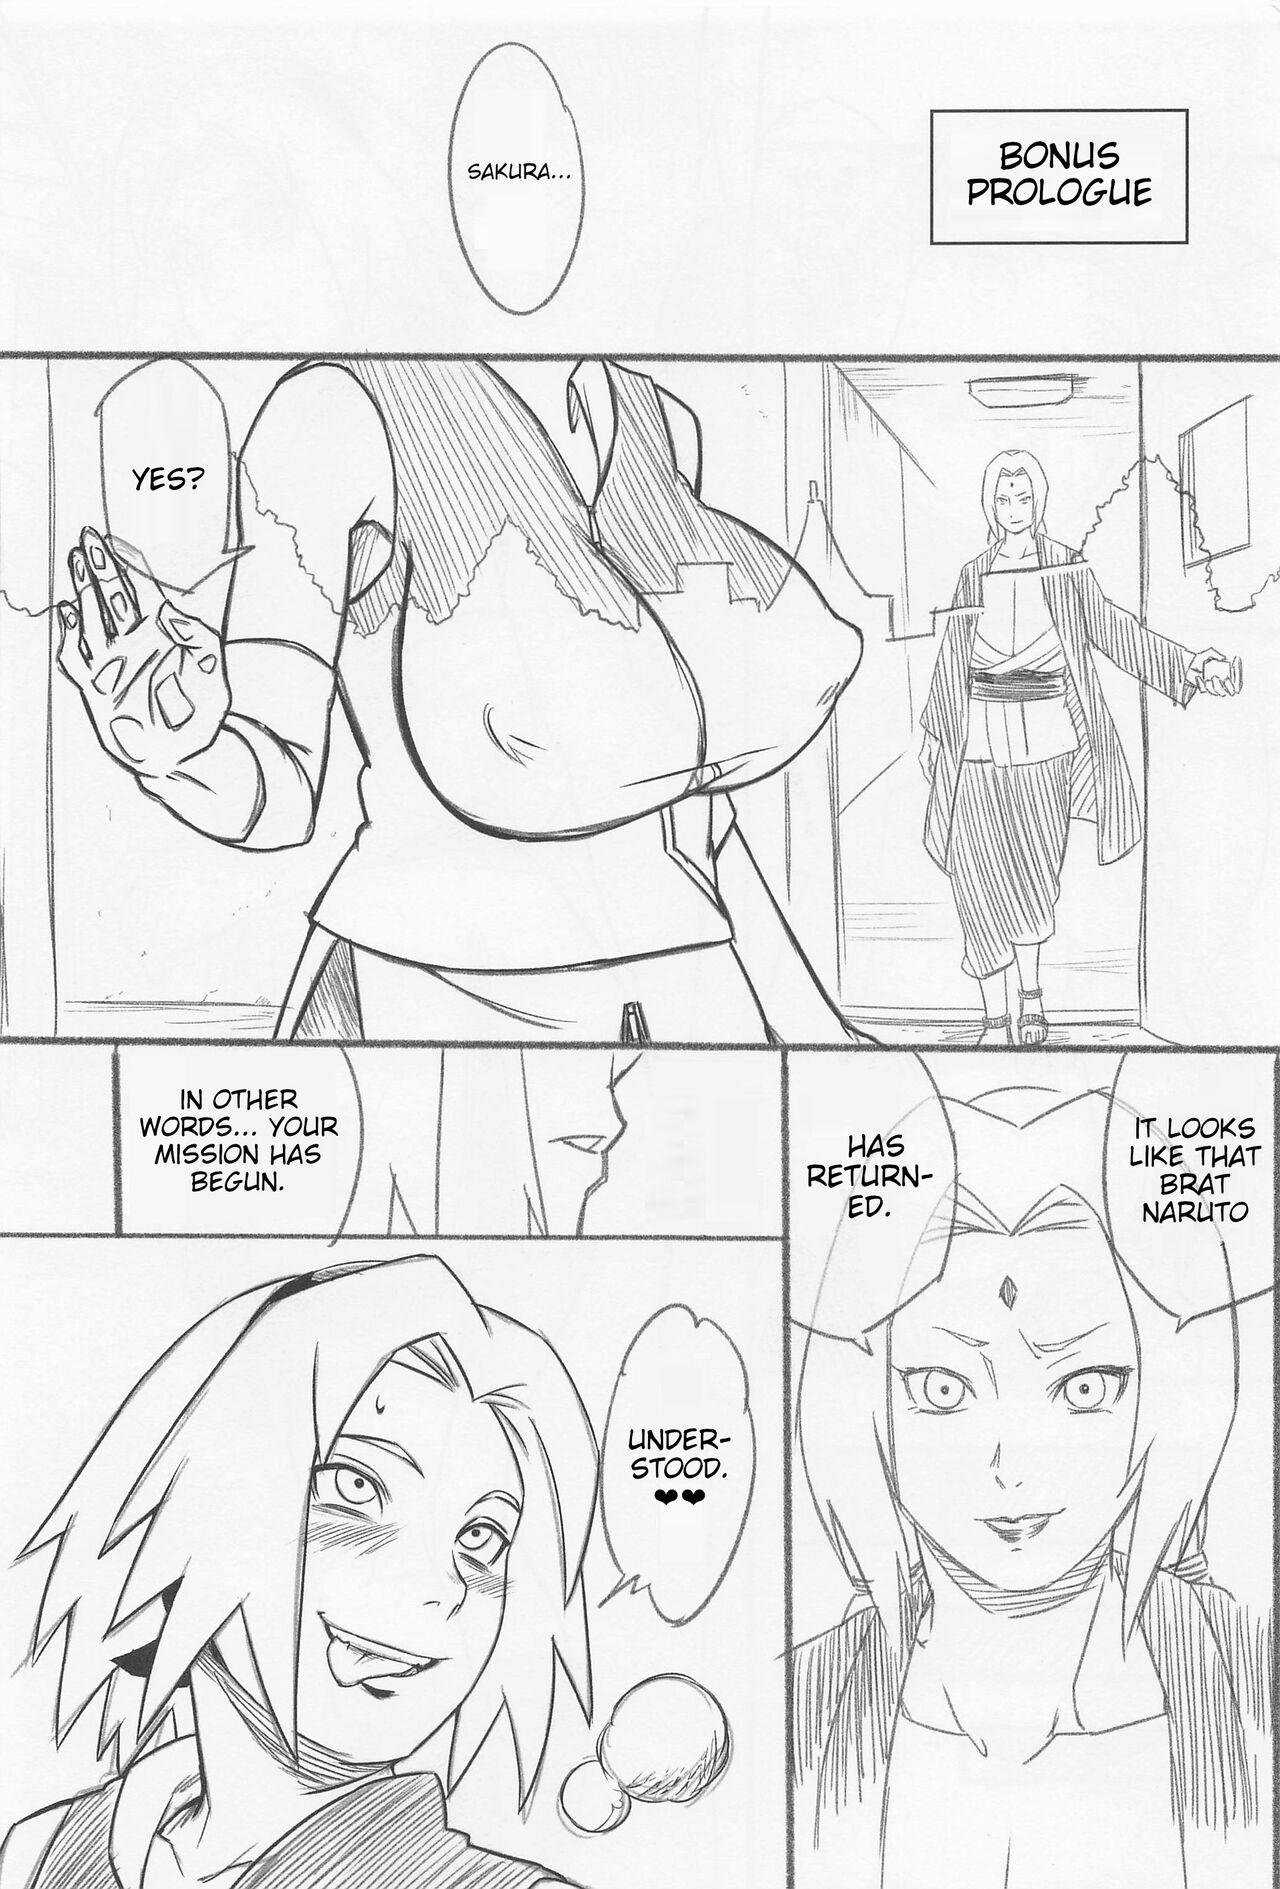 Seduction Hyakugo no Jutsu - Naruto Free Petite Porn - Page 2